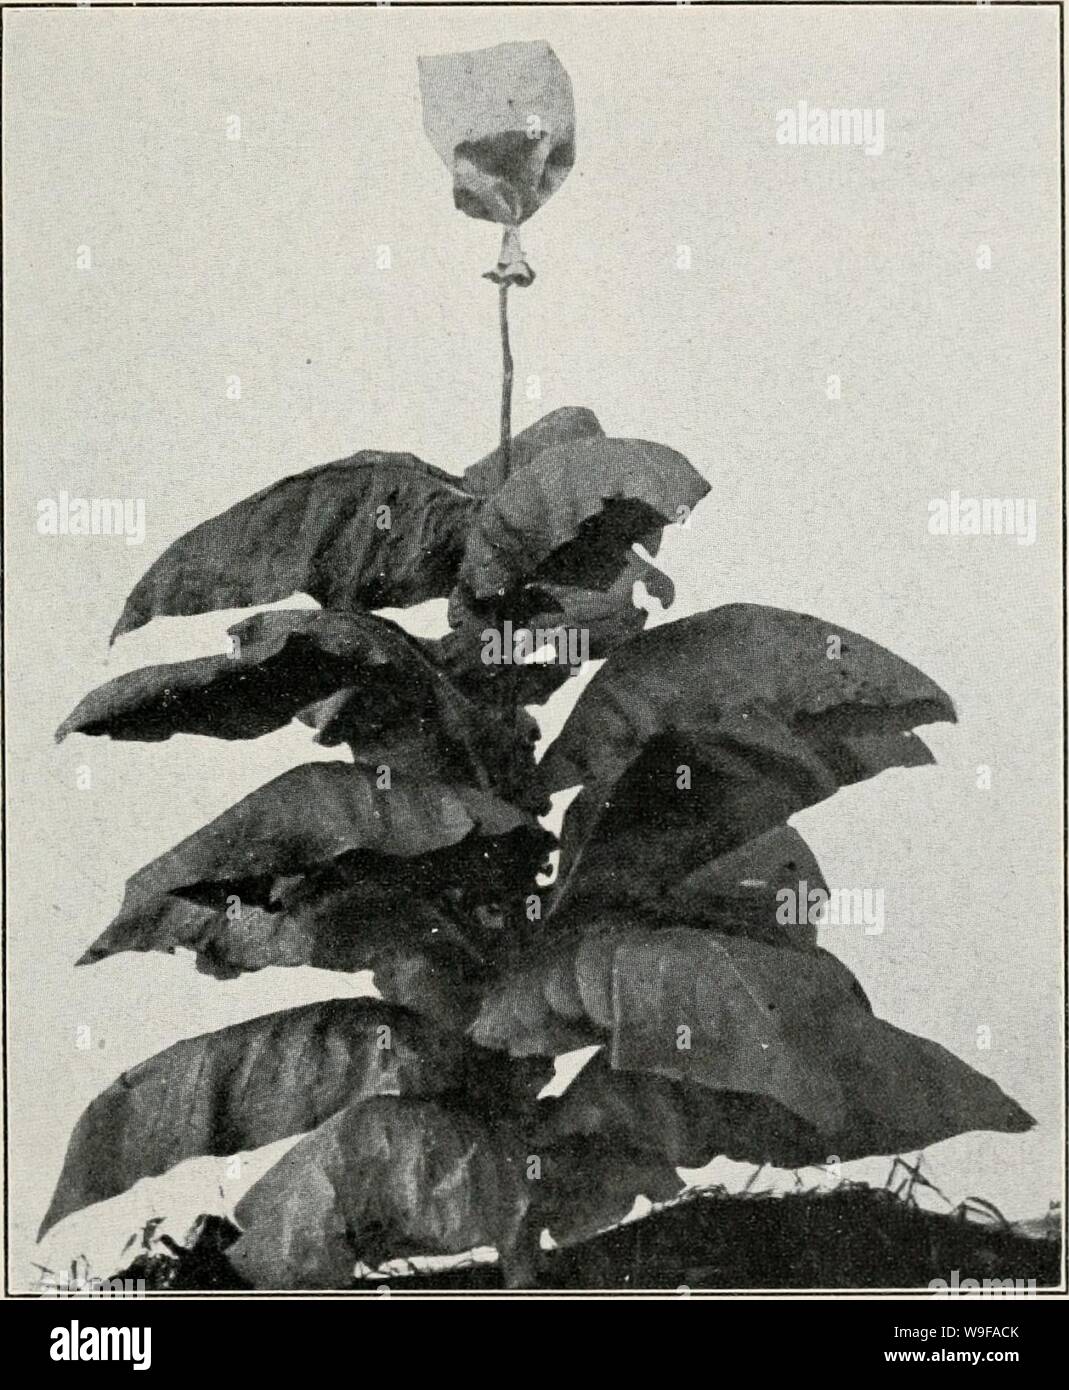 Archivio immagine dalla pagina 26 della coltivazione del tabacco in la. La coltivazione del tabacco nelle isole filippine cultivationoftob00brewrich Anno: 1910 ( 1'latk II. Impianto di yxANn-IIR IJi k salvataggio veggente llNnER P.A( :y tor.Acco. Showinc .Mi ro 1'rf:Crossinc vext;. Foto Stock